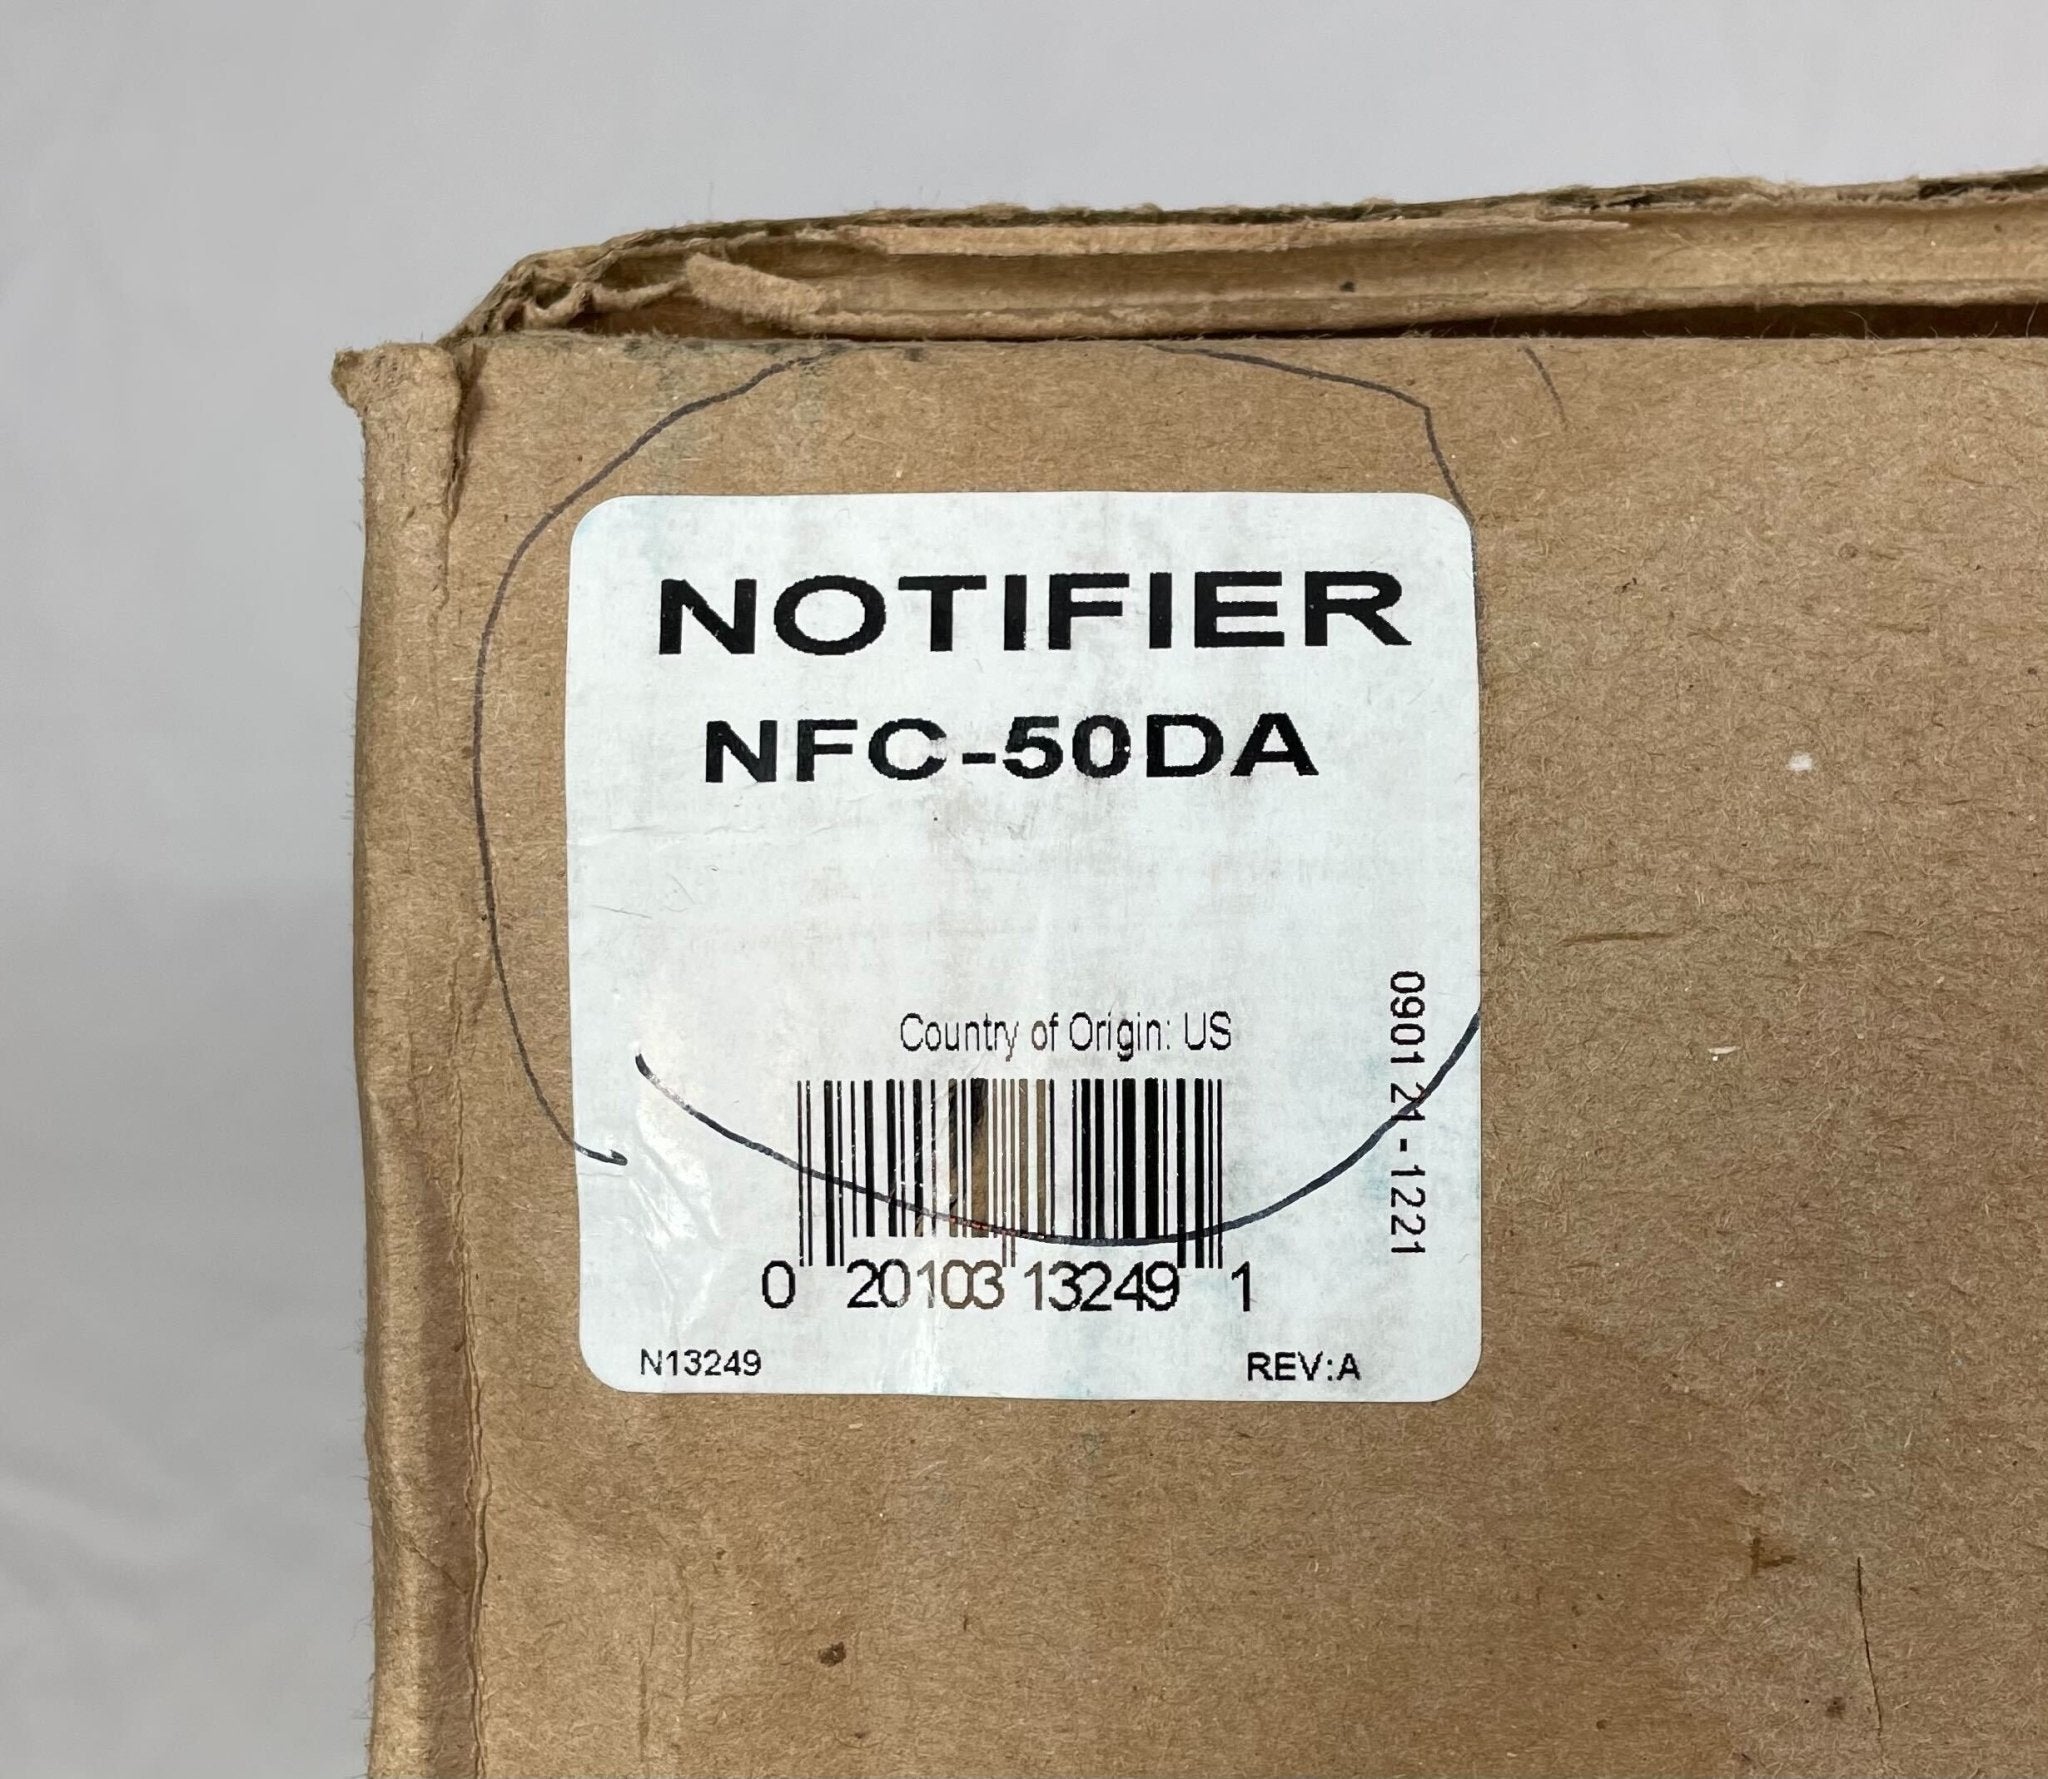 Notifier NFC-50DA - The Fire Alarm Supplier